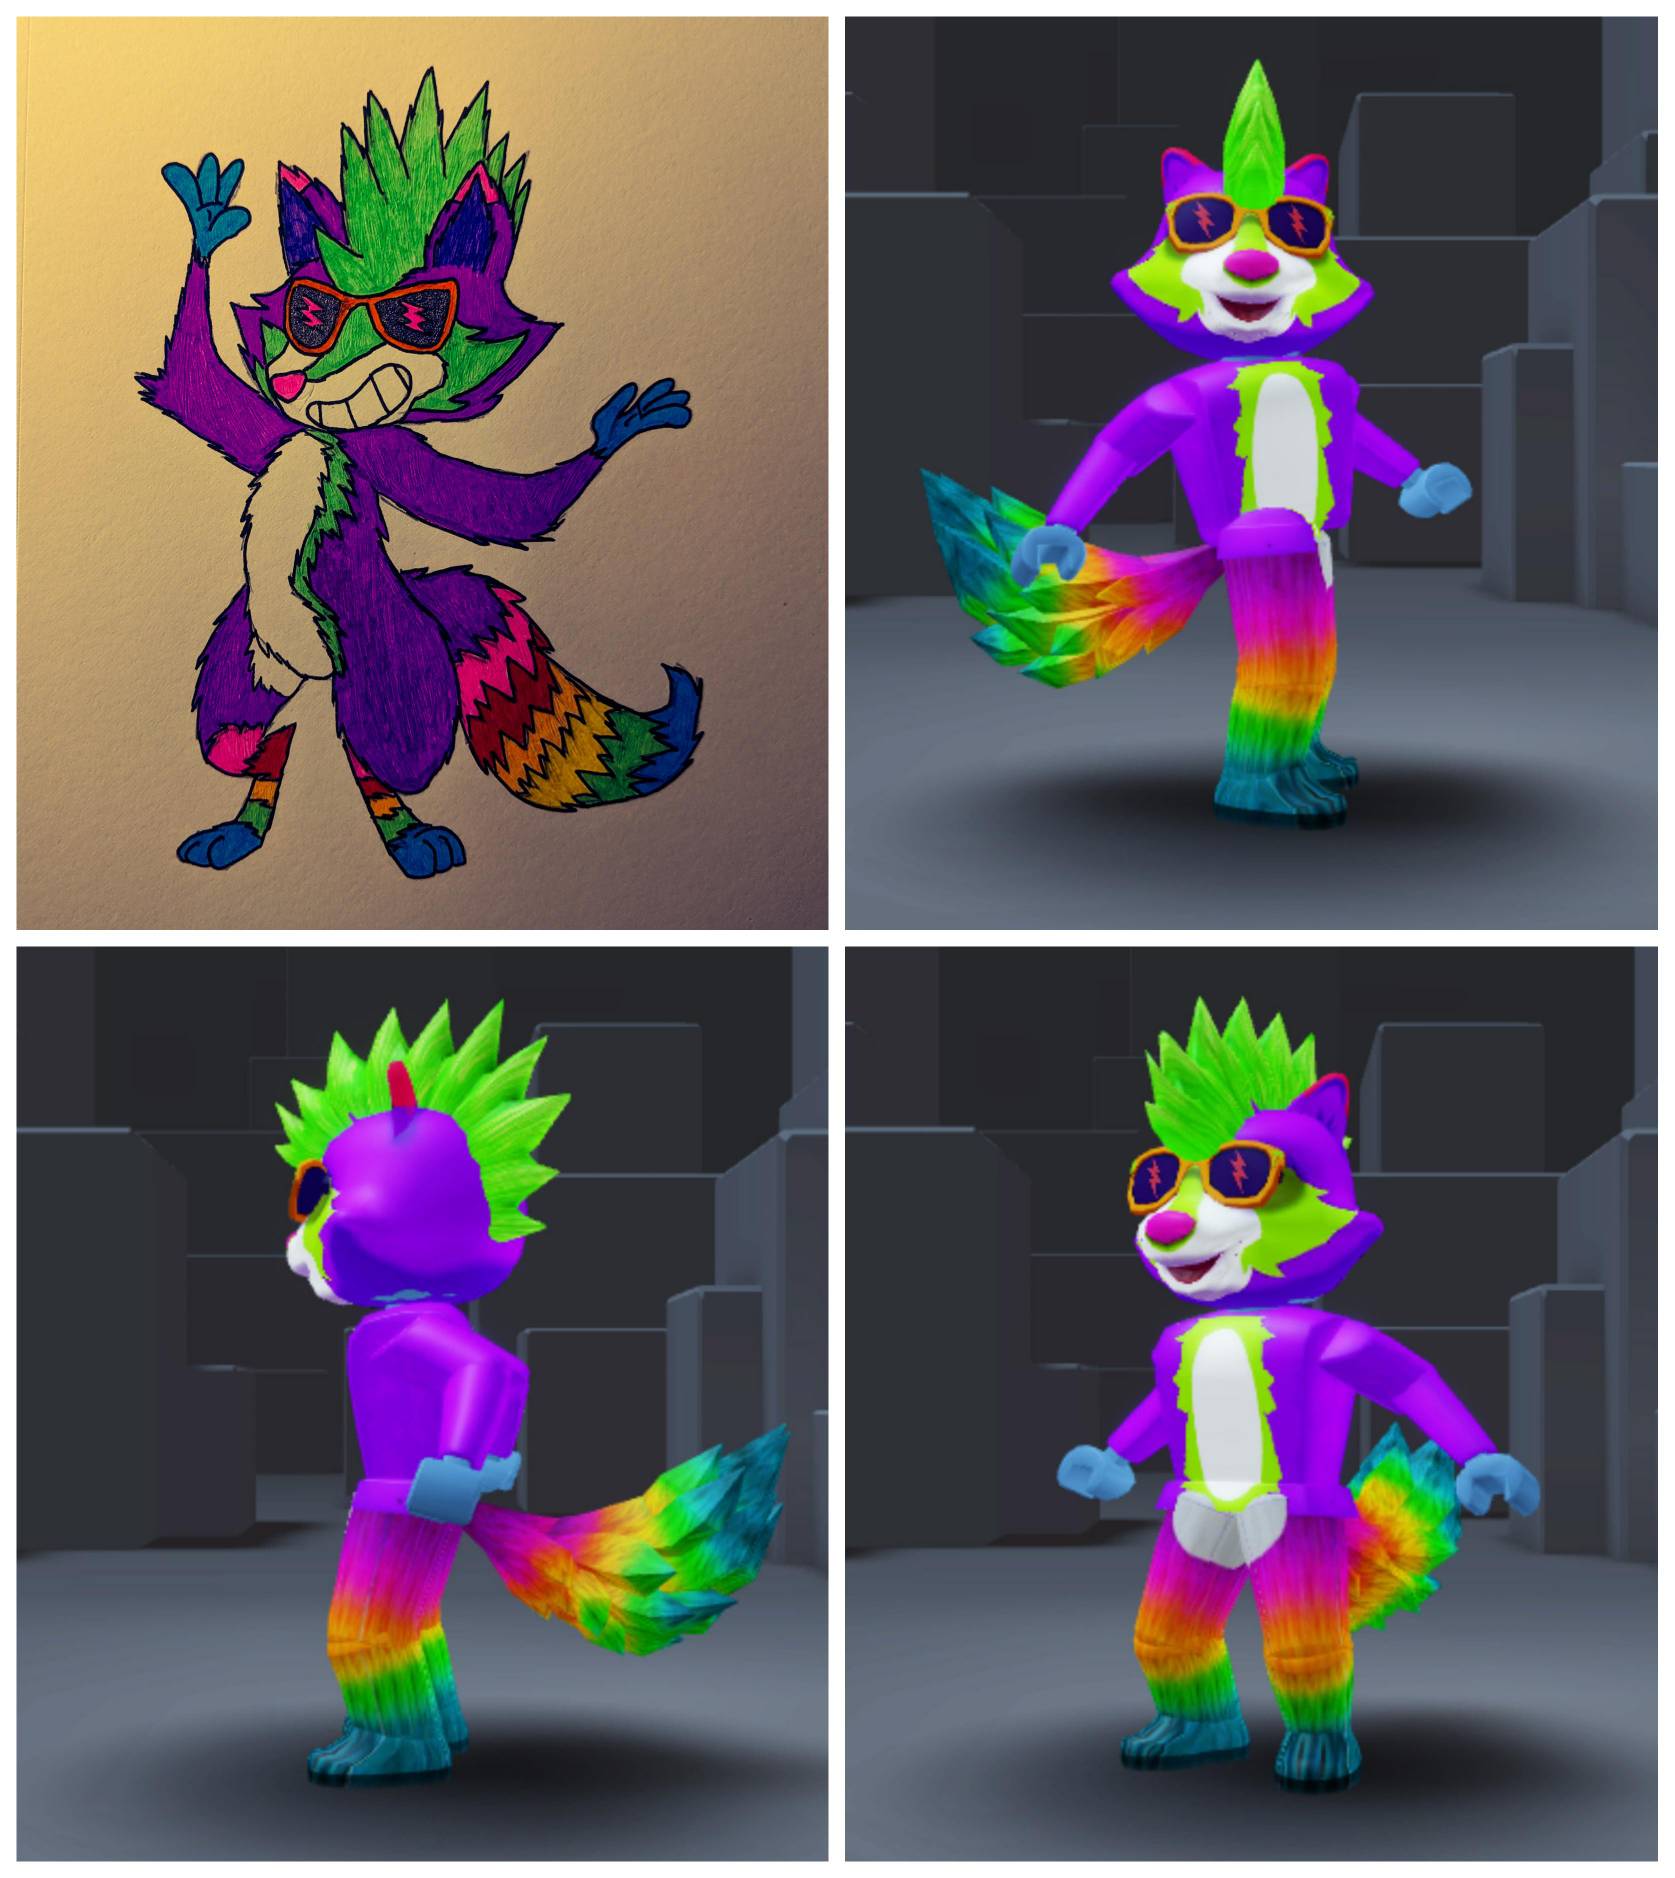 Với Neon Raccoon Fox Avatar, bạn sẽ được khám phá thế giới Roblox với phiên bản avatar đầy mới lạ. Bạn sẽ có trải nghiệm thú vị và độc đáo hơn khi sử dụng avatar này trong những trò chơi yêu thích của mình.